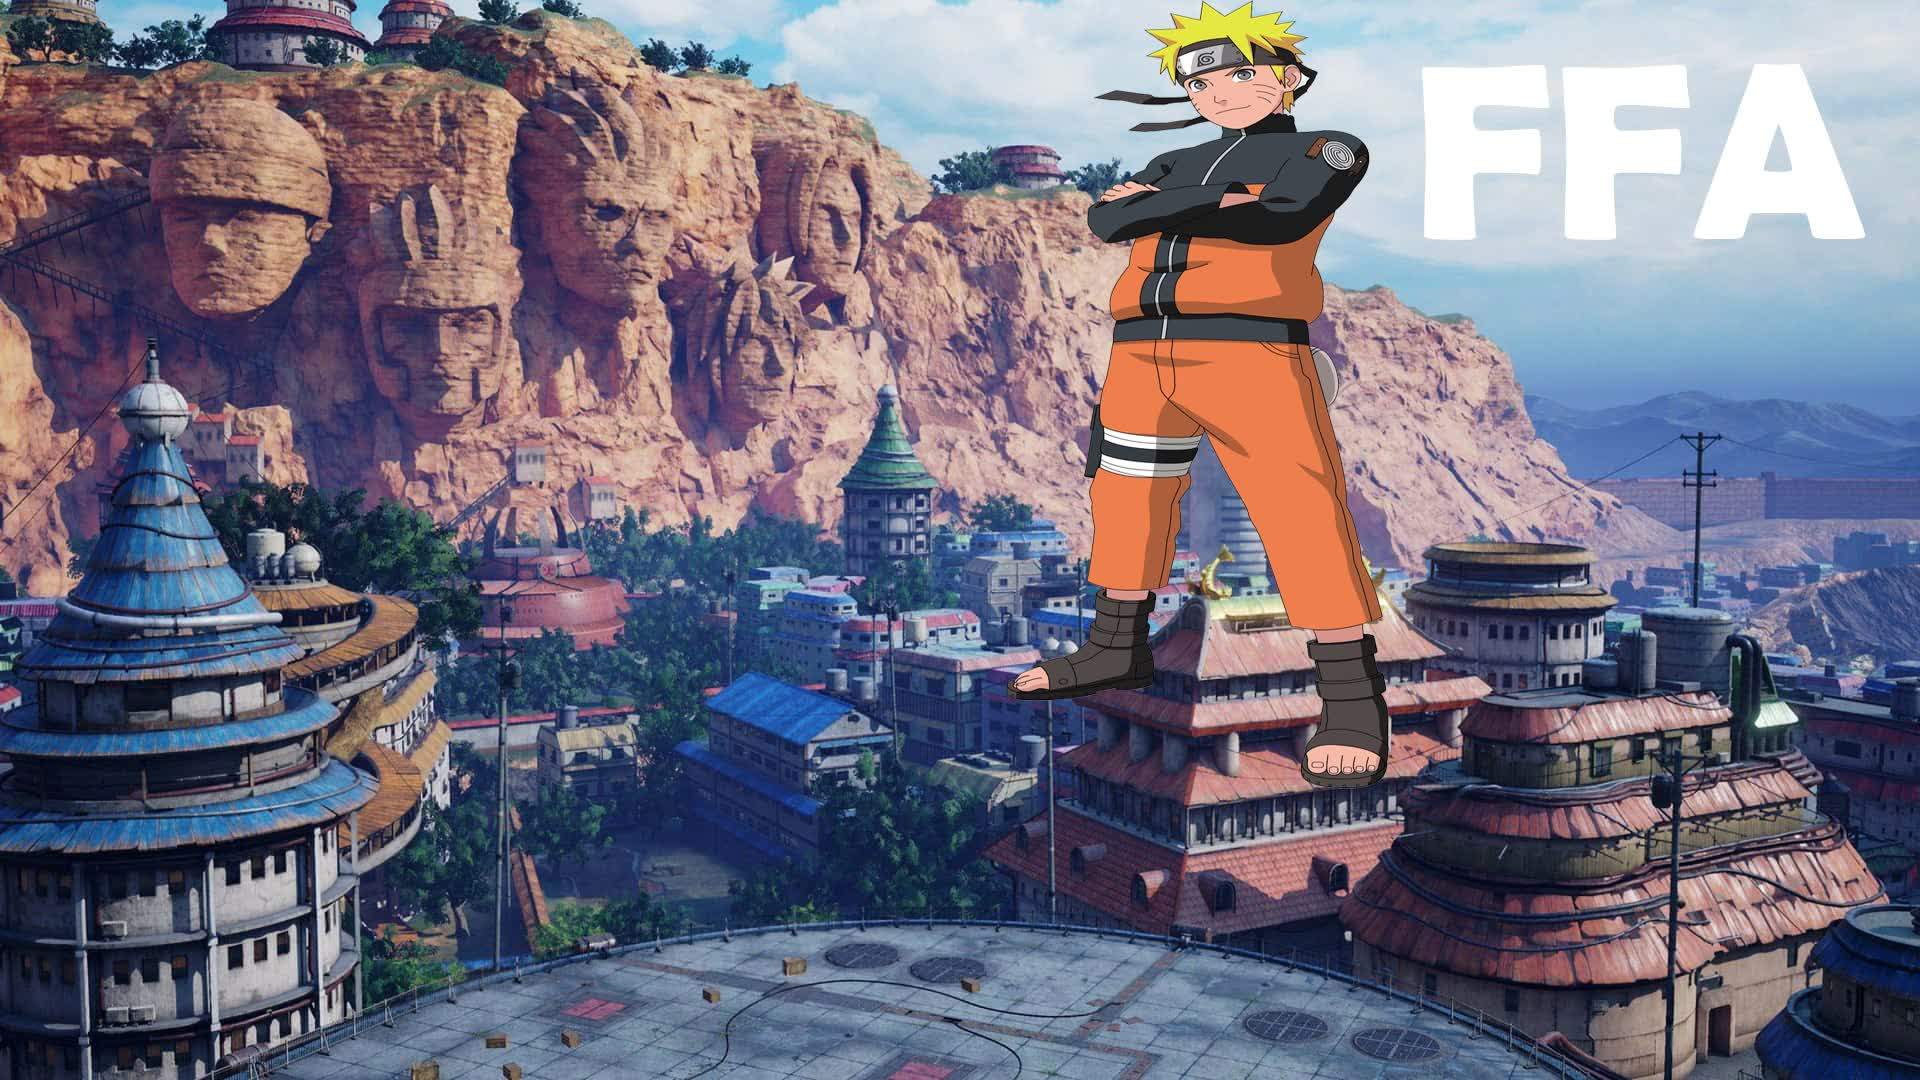 Naruto Konoha : FFA